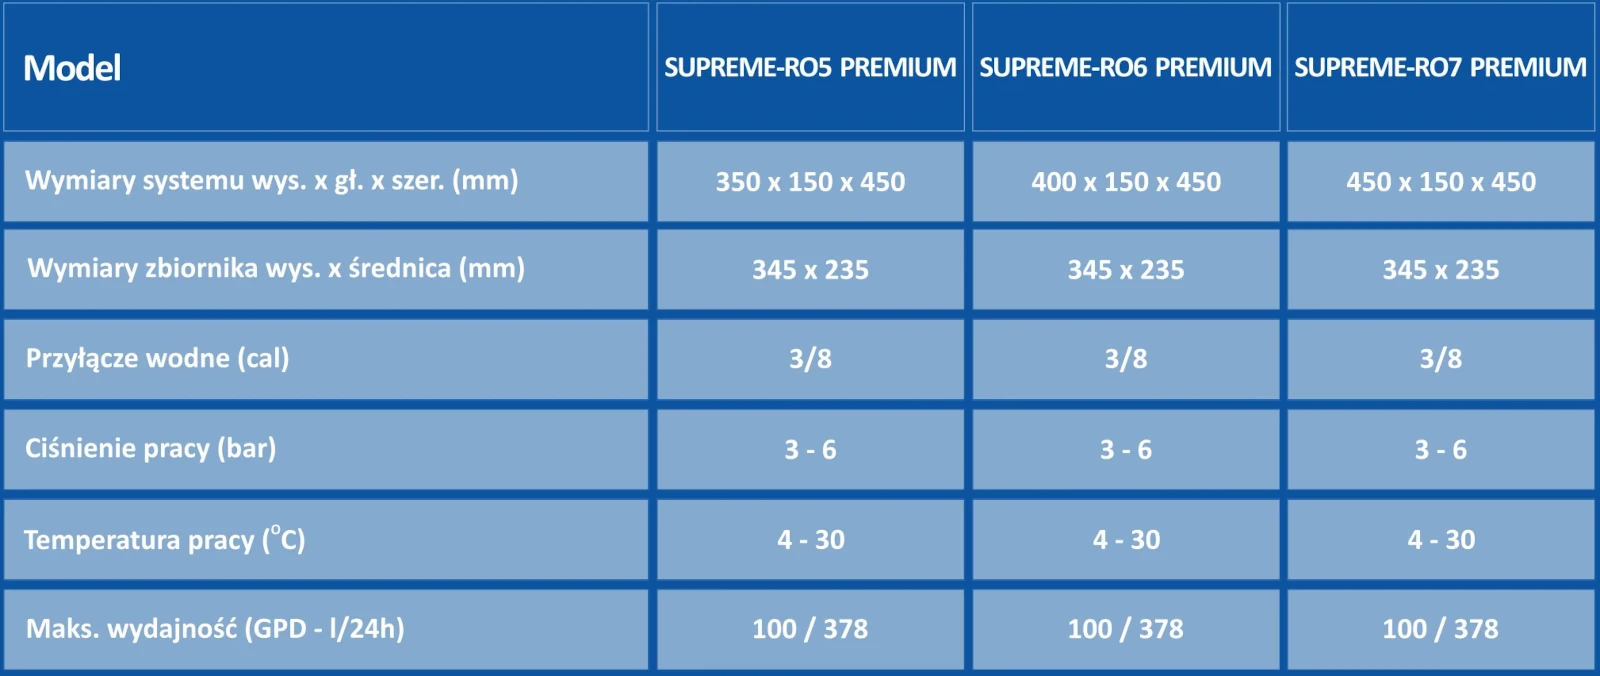 Wymiary filtrów osmozy Supreme Premium RO5